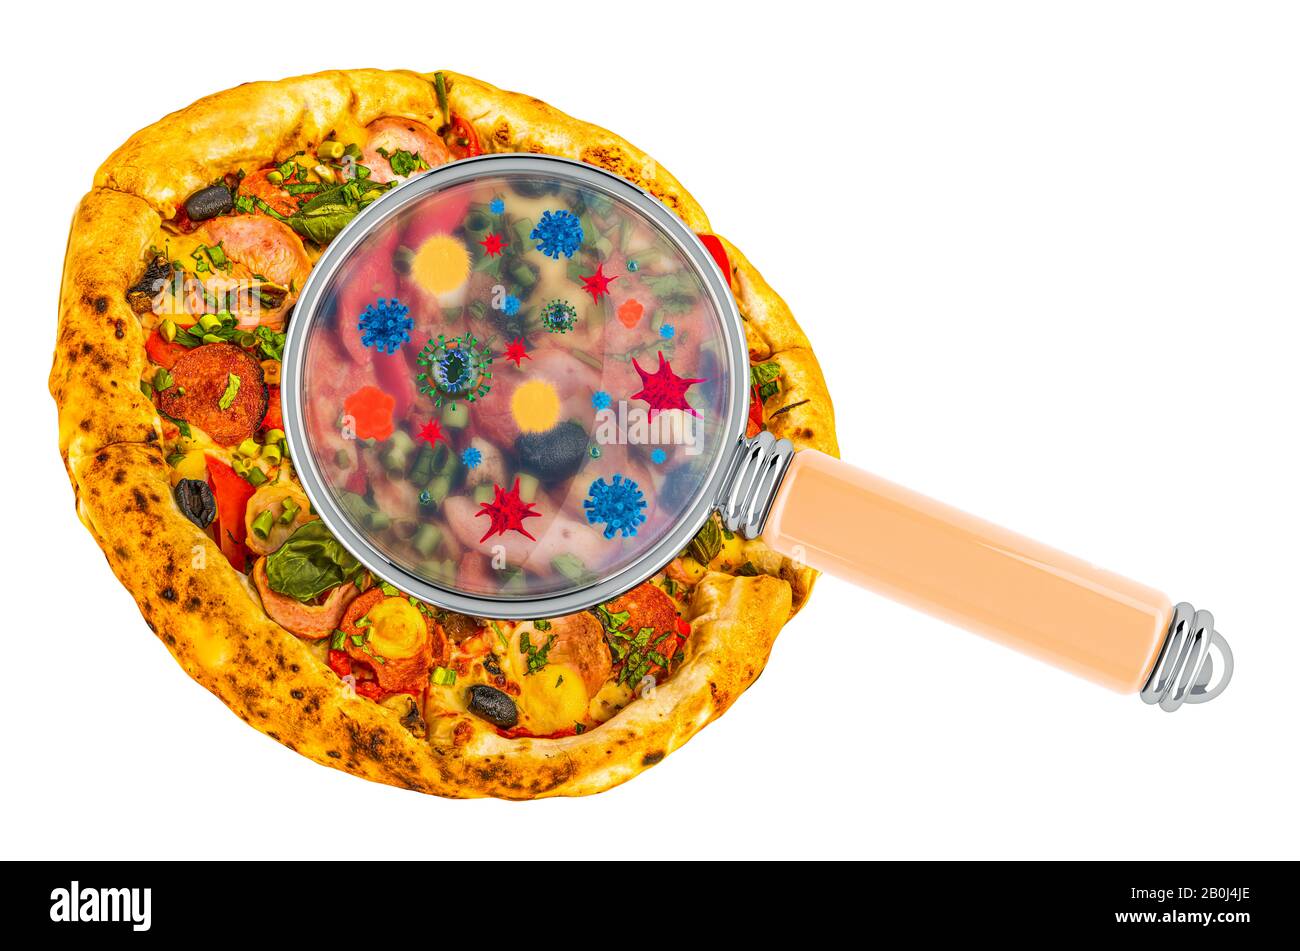 Pizza aux germes, microbes ou virus sous loupe, rendu tridimensionnel isolé sur fond blanc Banque D'Images